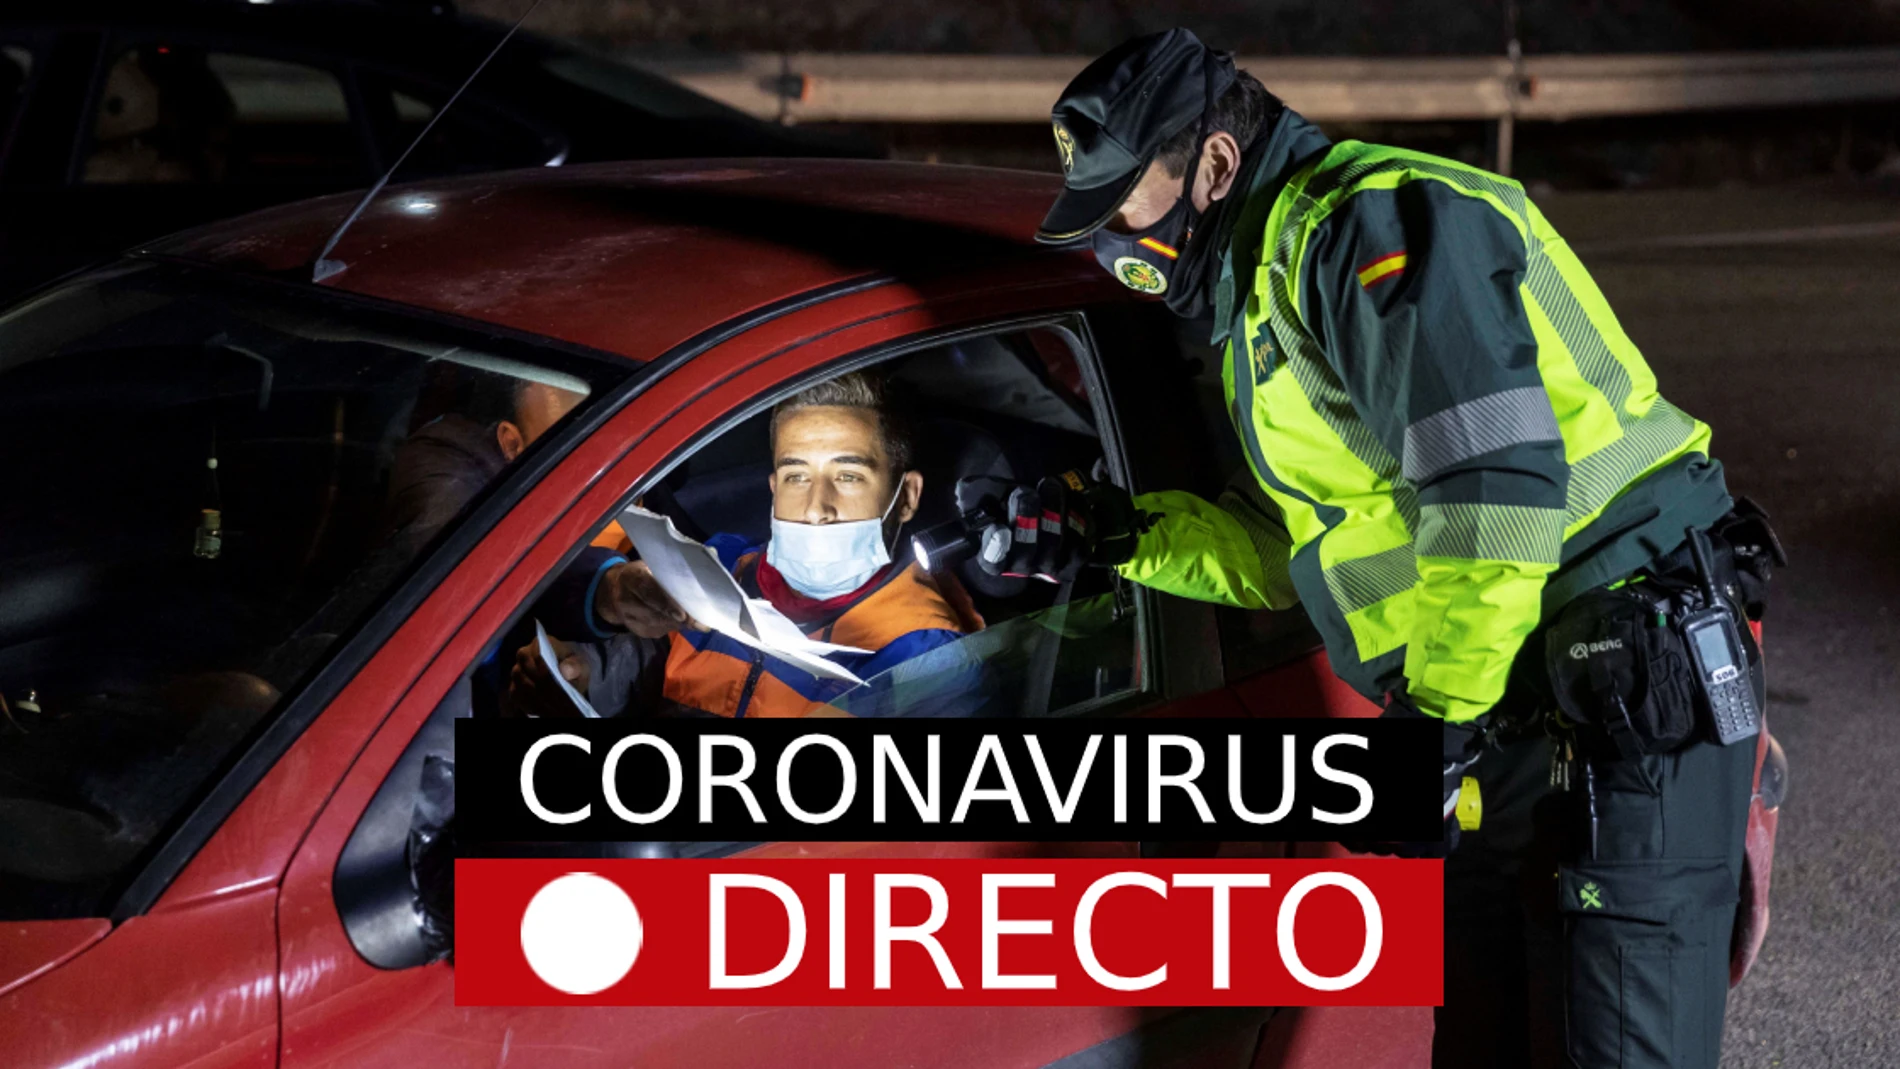 Coronavirus España | Cierre perimetral, vacuna del COVID y últimas noticias de restricciones, en directo